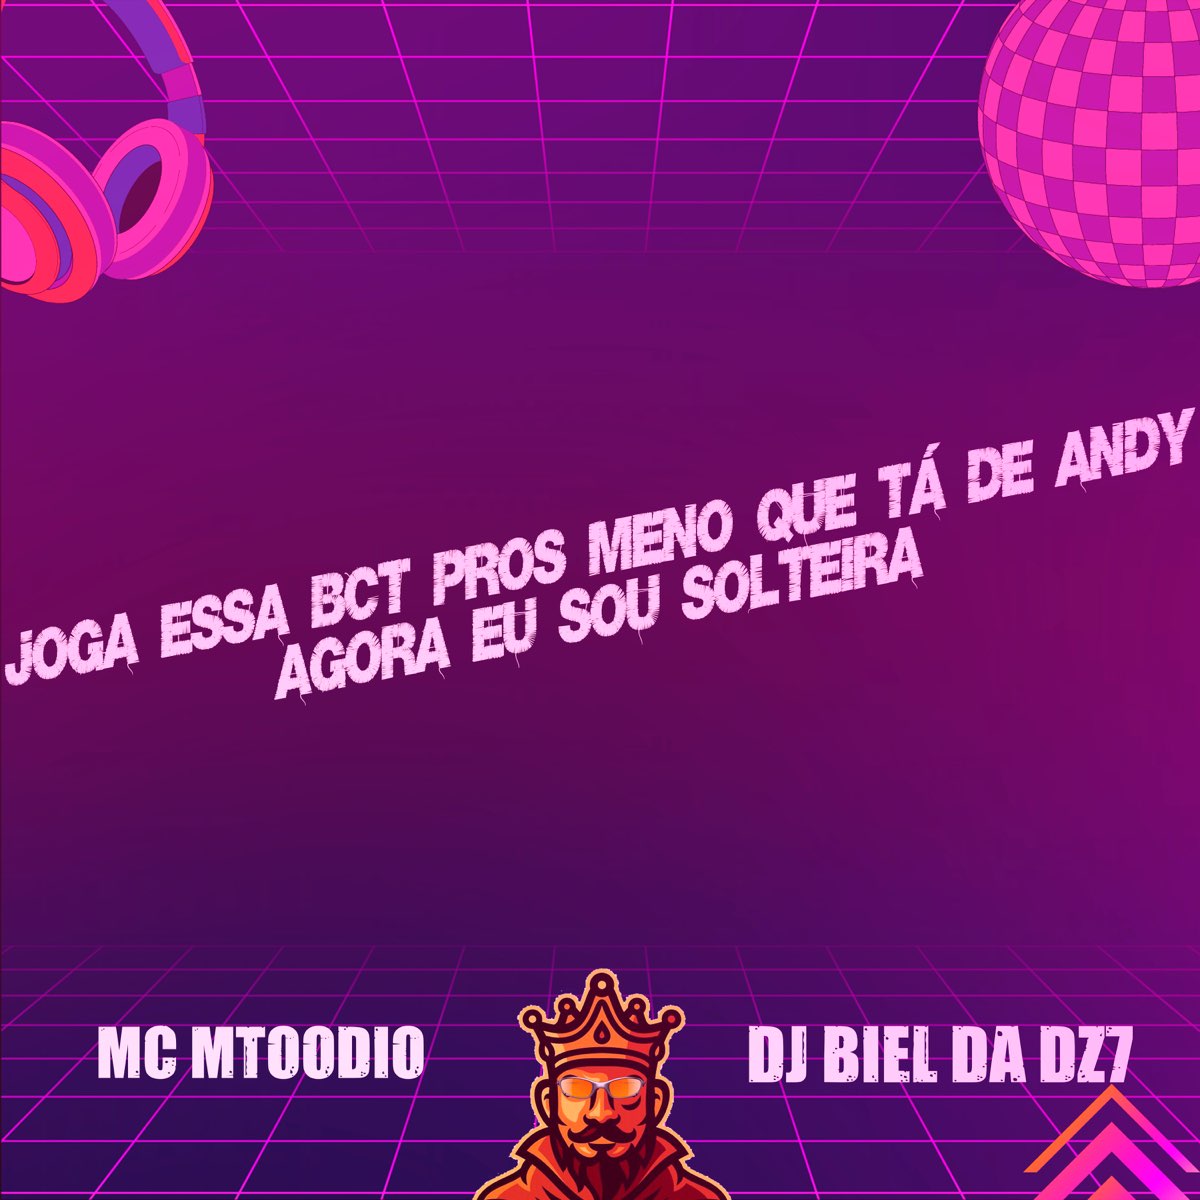 Joga Essa Bct Pros Meno Que Tá de Andy - Agora Eu Sou Solteira - Song by MC  MTOODIO & DJ Biel da DZ7 - Apple Music